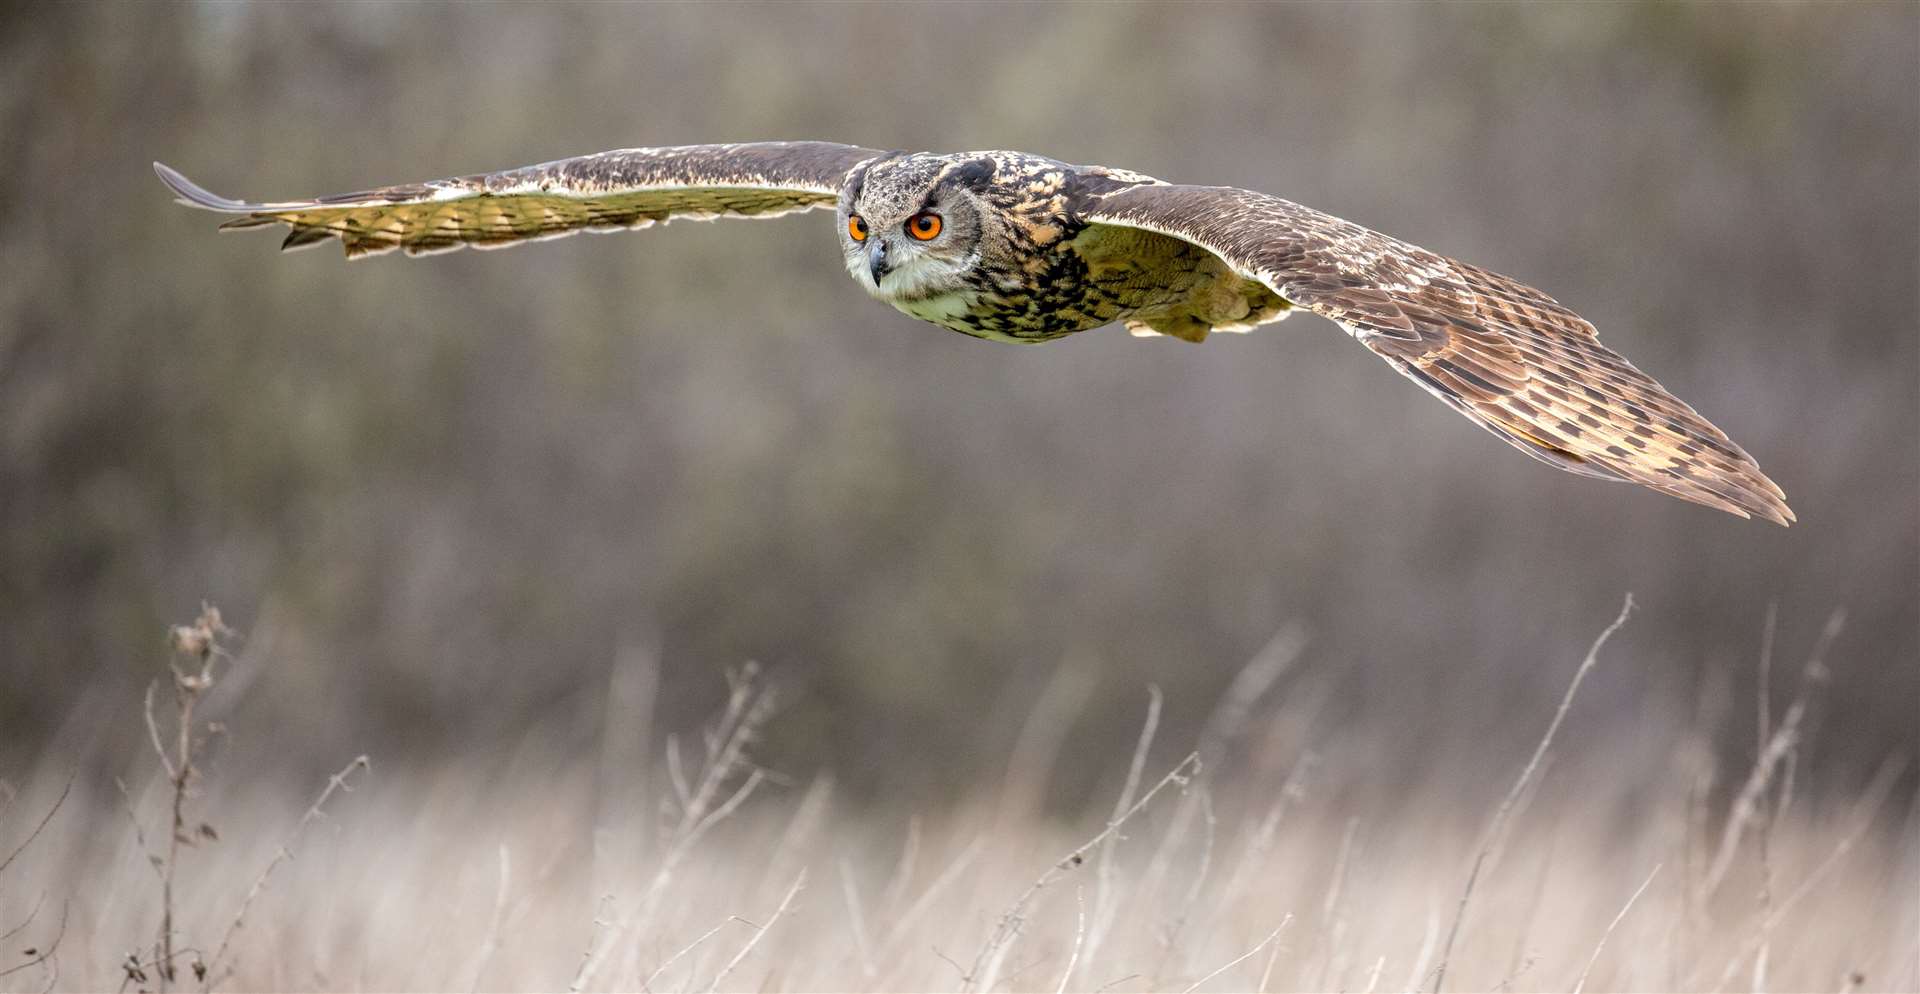 A Eurasian Eagle Owl in its natural environment. Adobe Stock photos.